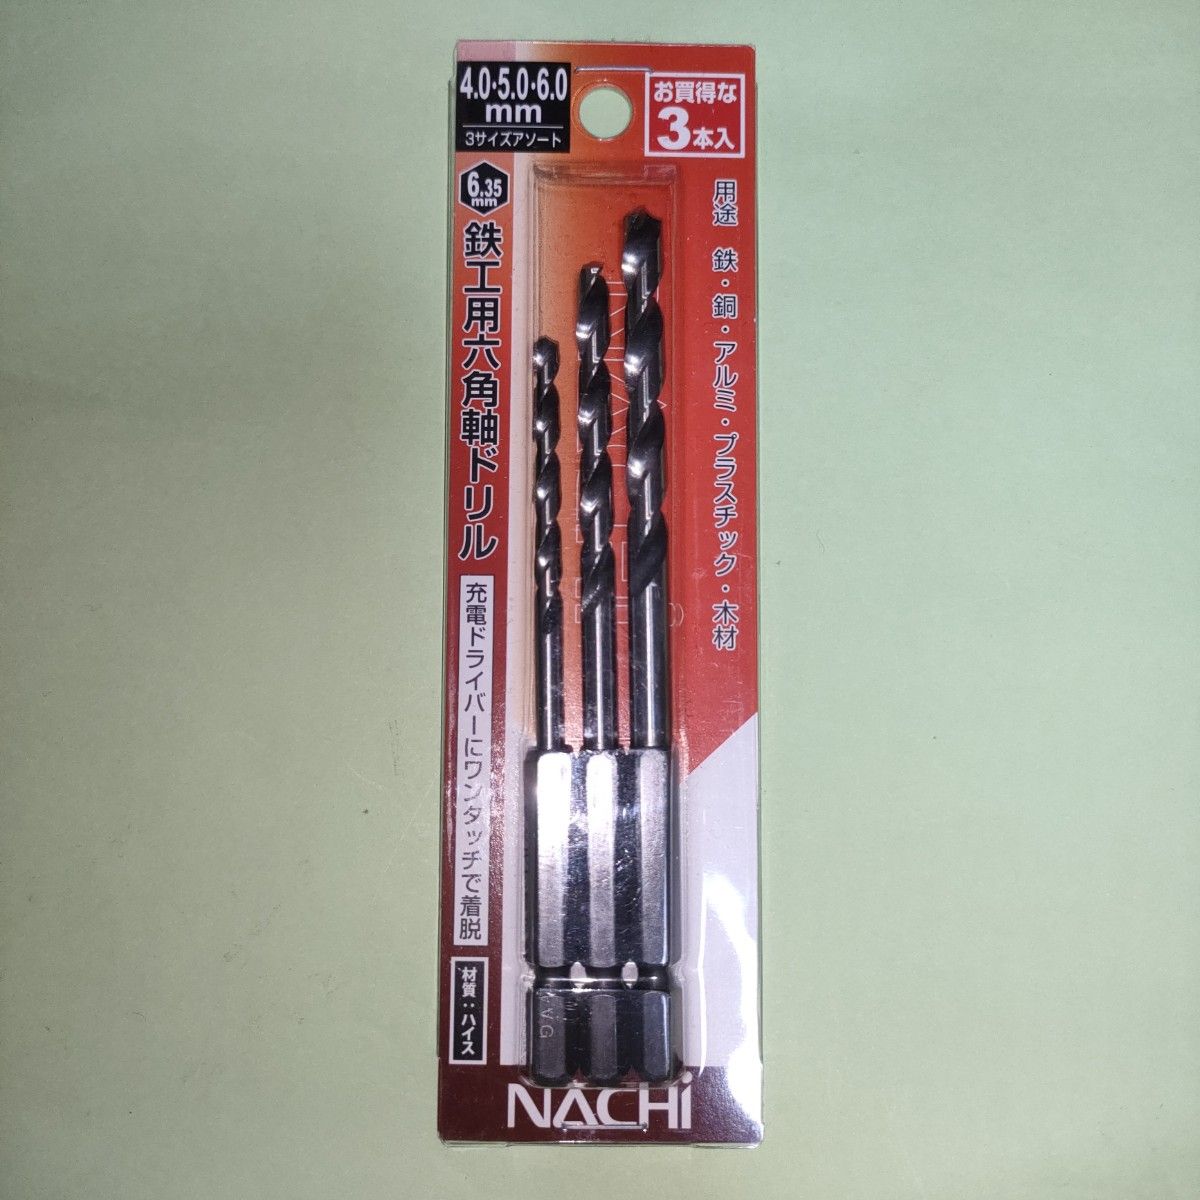 ナチ(NACHI) 六角軸鉄工ドリル 4.0mm 5.0mm 6.0mm